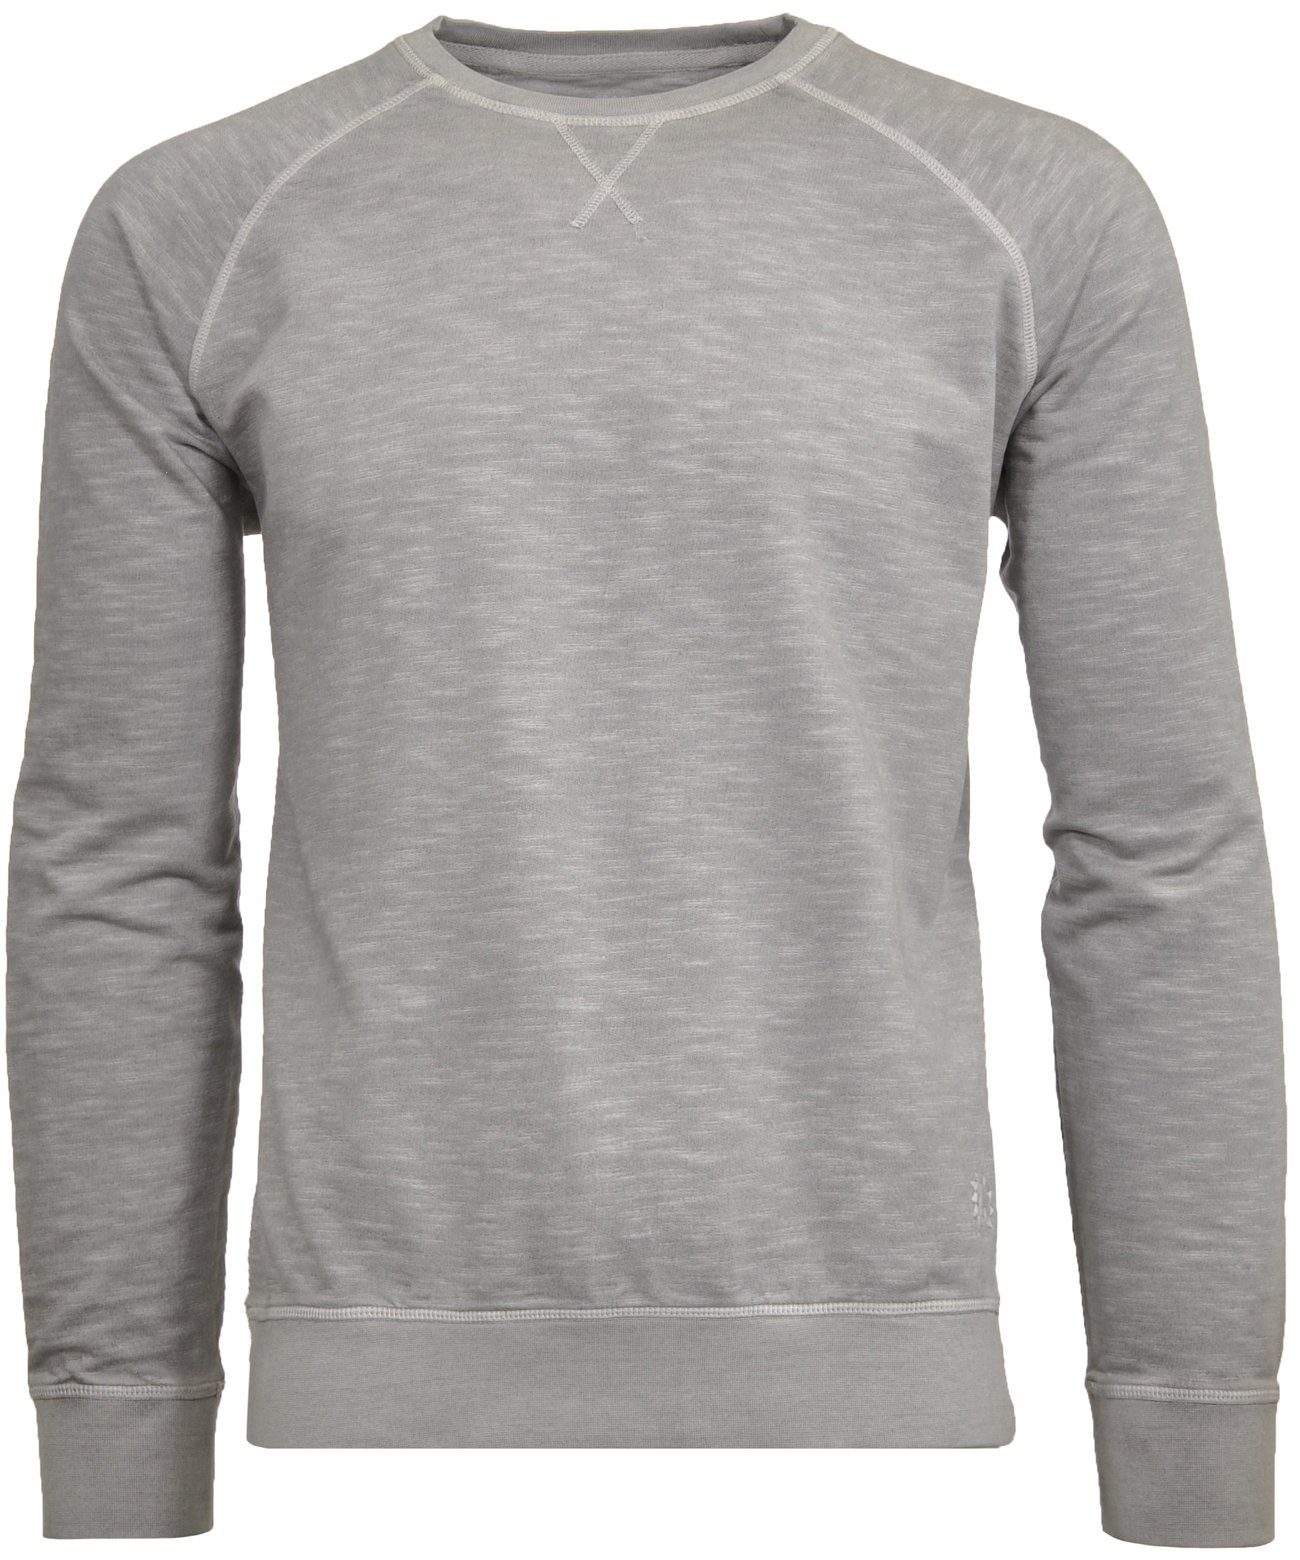 RAGMAN Sweatshirt Grau-Beige-215